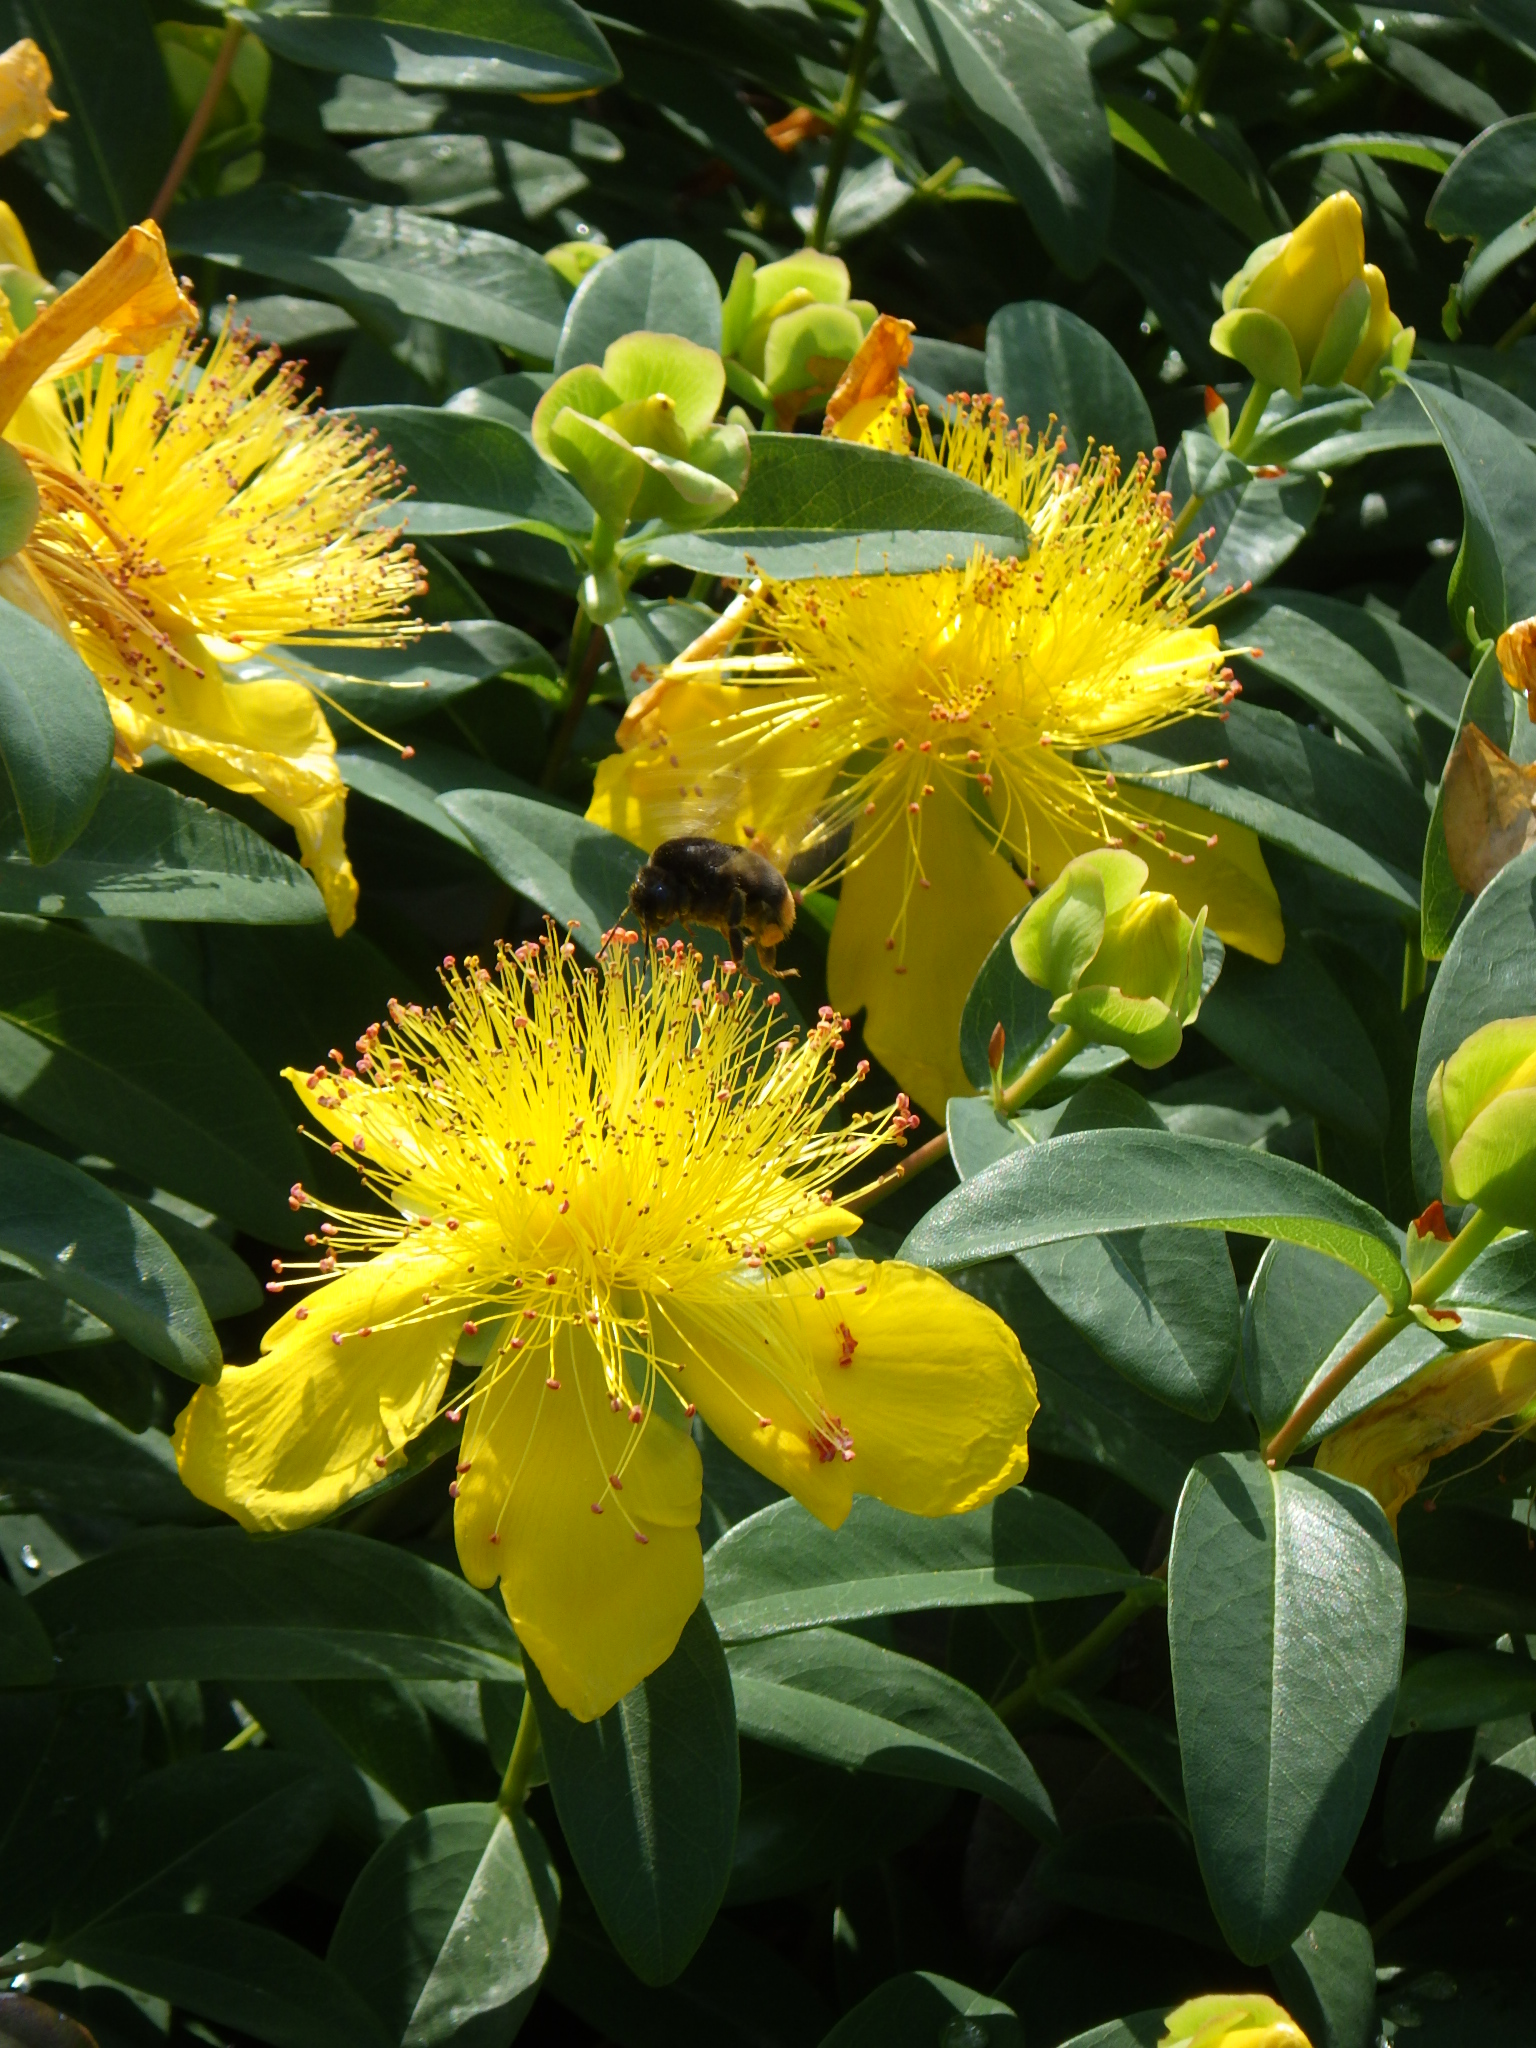 新潟県立植物園 花と緑の情報センター前と宿根草花壇ではヒペリカム オトギリソウ科 をご覧いただけます 黄金色の花が上向きに咲き 多数の雄しべが突き出すのが特徴です よく見ると 蜂が飛んでます Yh ヒペリカム 新潟県立植物園 植物